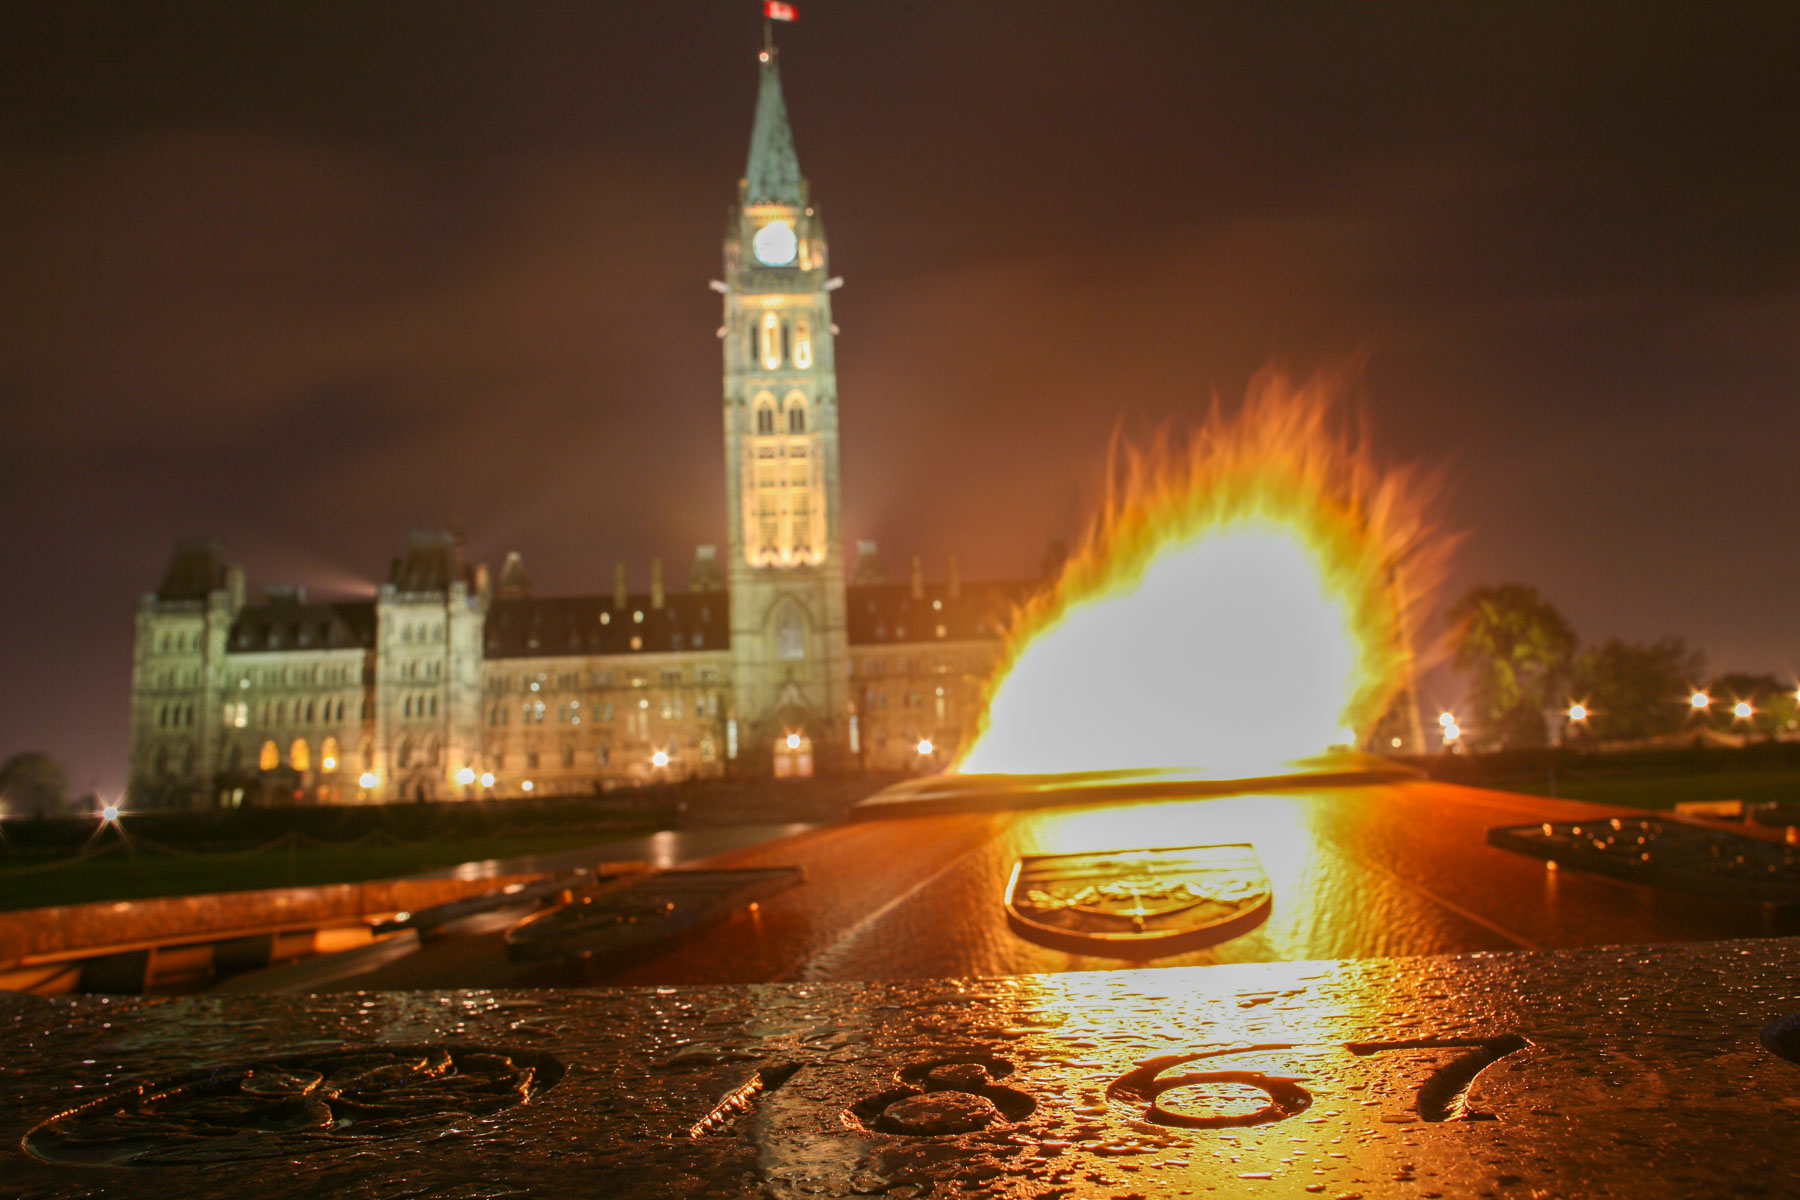 De nuit, une flamme brûle au centre d’une fontaine circulaire avec en arrière plan, un imposant bâtiment néogothique avec une haute tour.